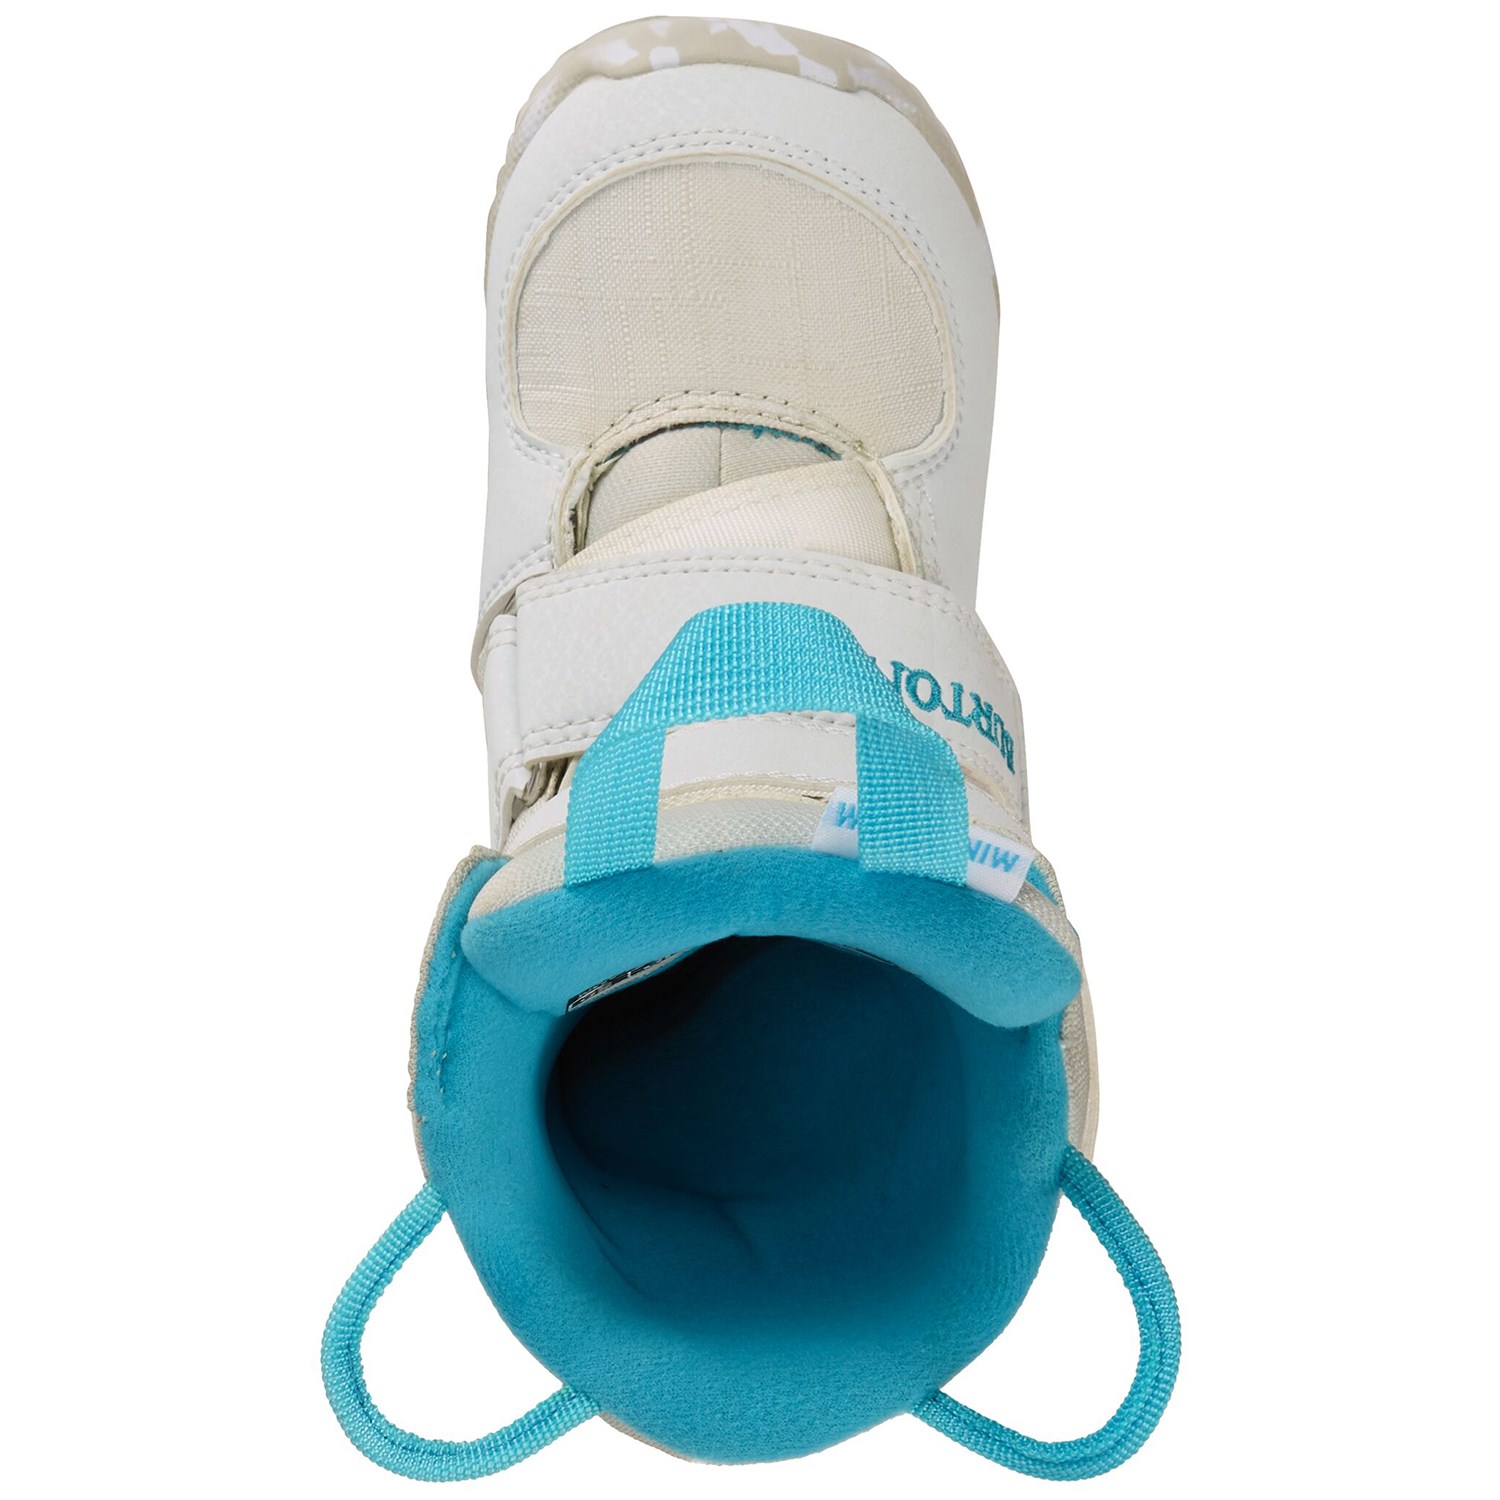 Детские ботинки для сноуборда Burton Mini - Grom купить в Boardshop №1